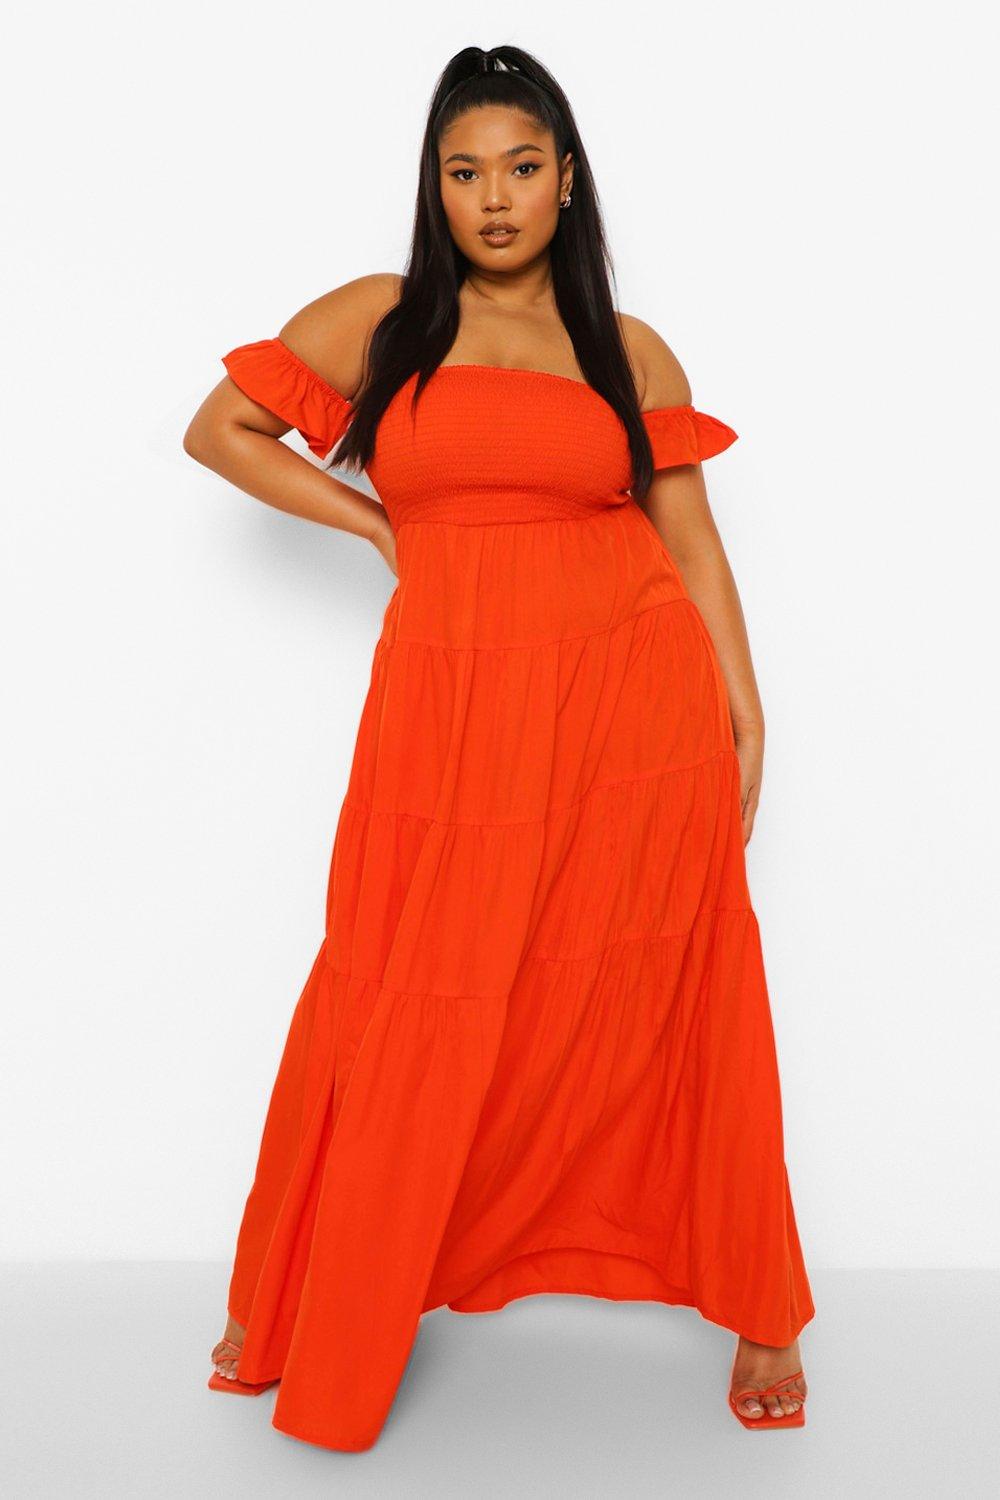 Orange Dresses | Burnt Orange, Coral ...